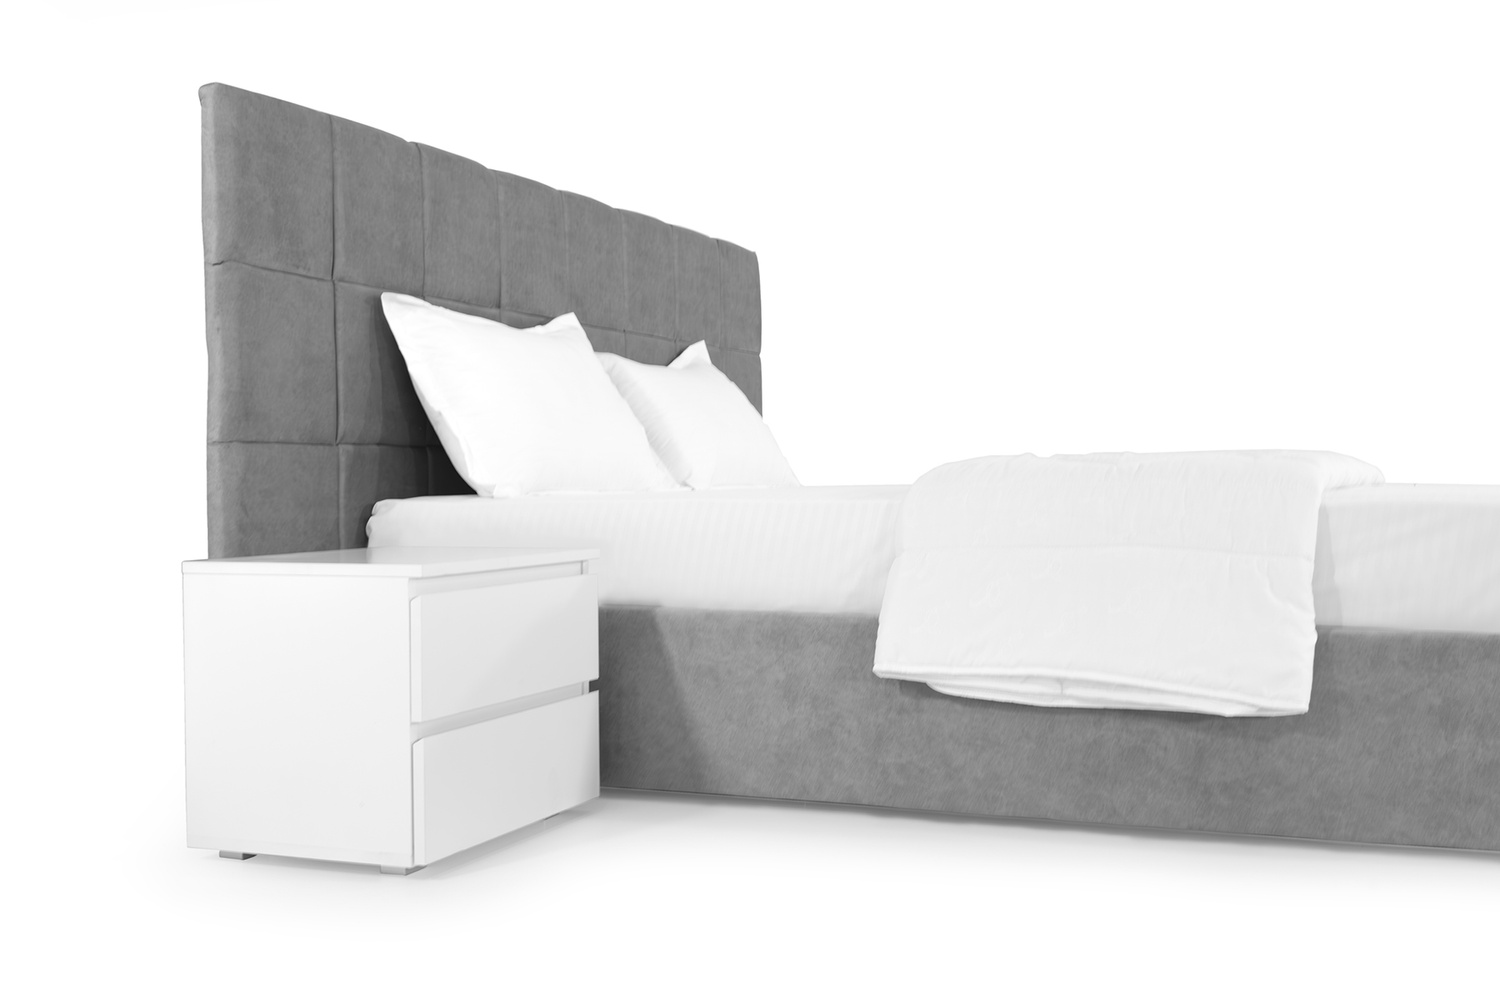 Ліжко Гортензія 140х200 (Світло-сірий, ламелі, без підйомного механізму) IMI grtnz140x200ssb фото